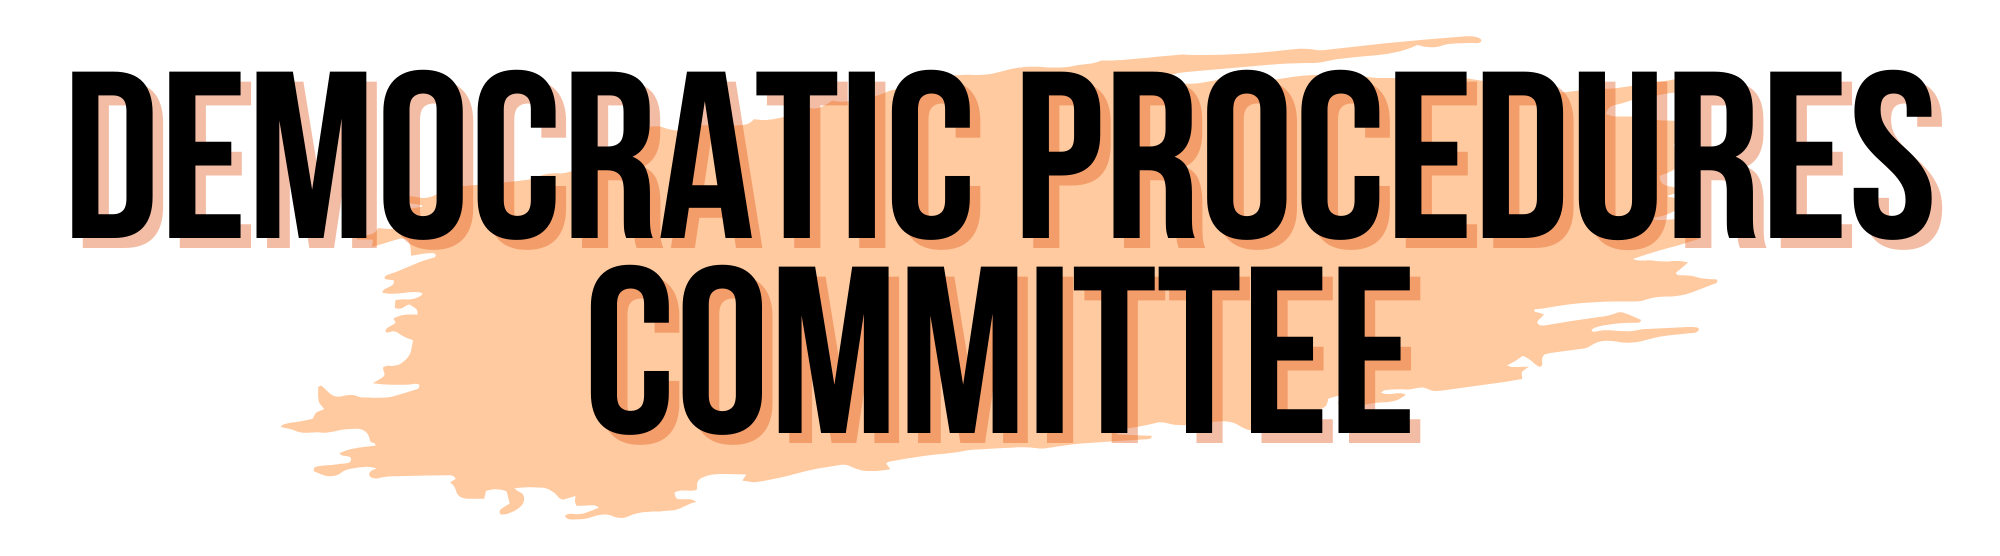 democratic procedure committee